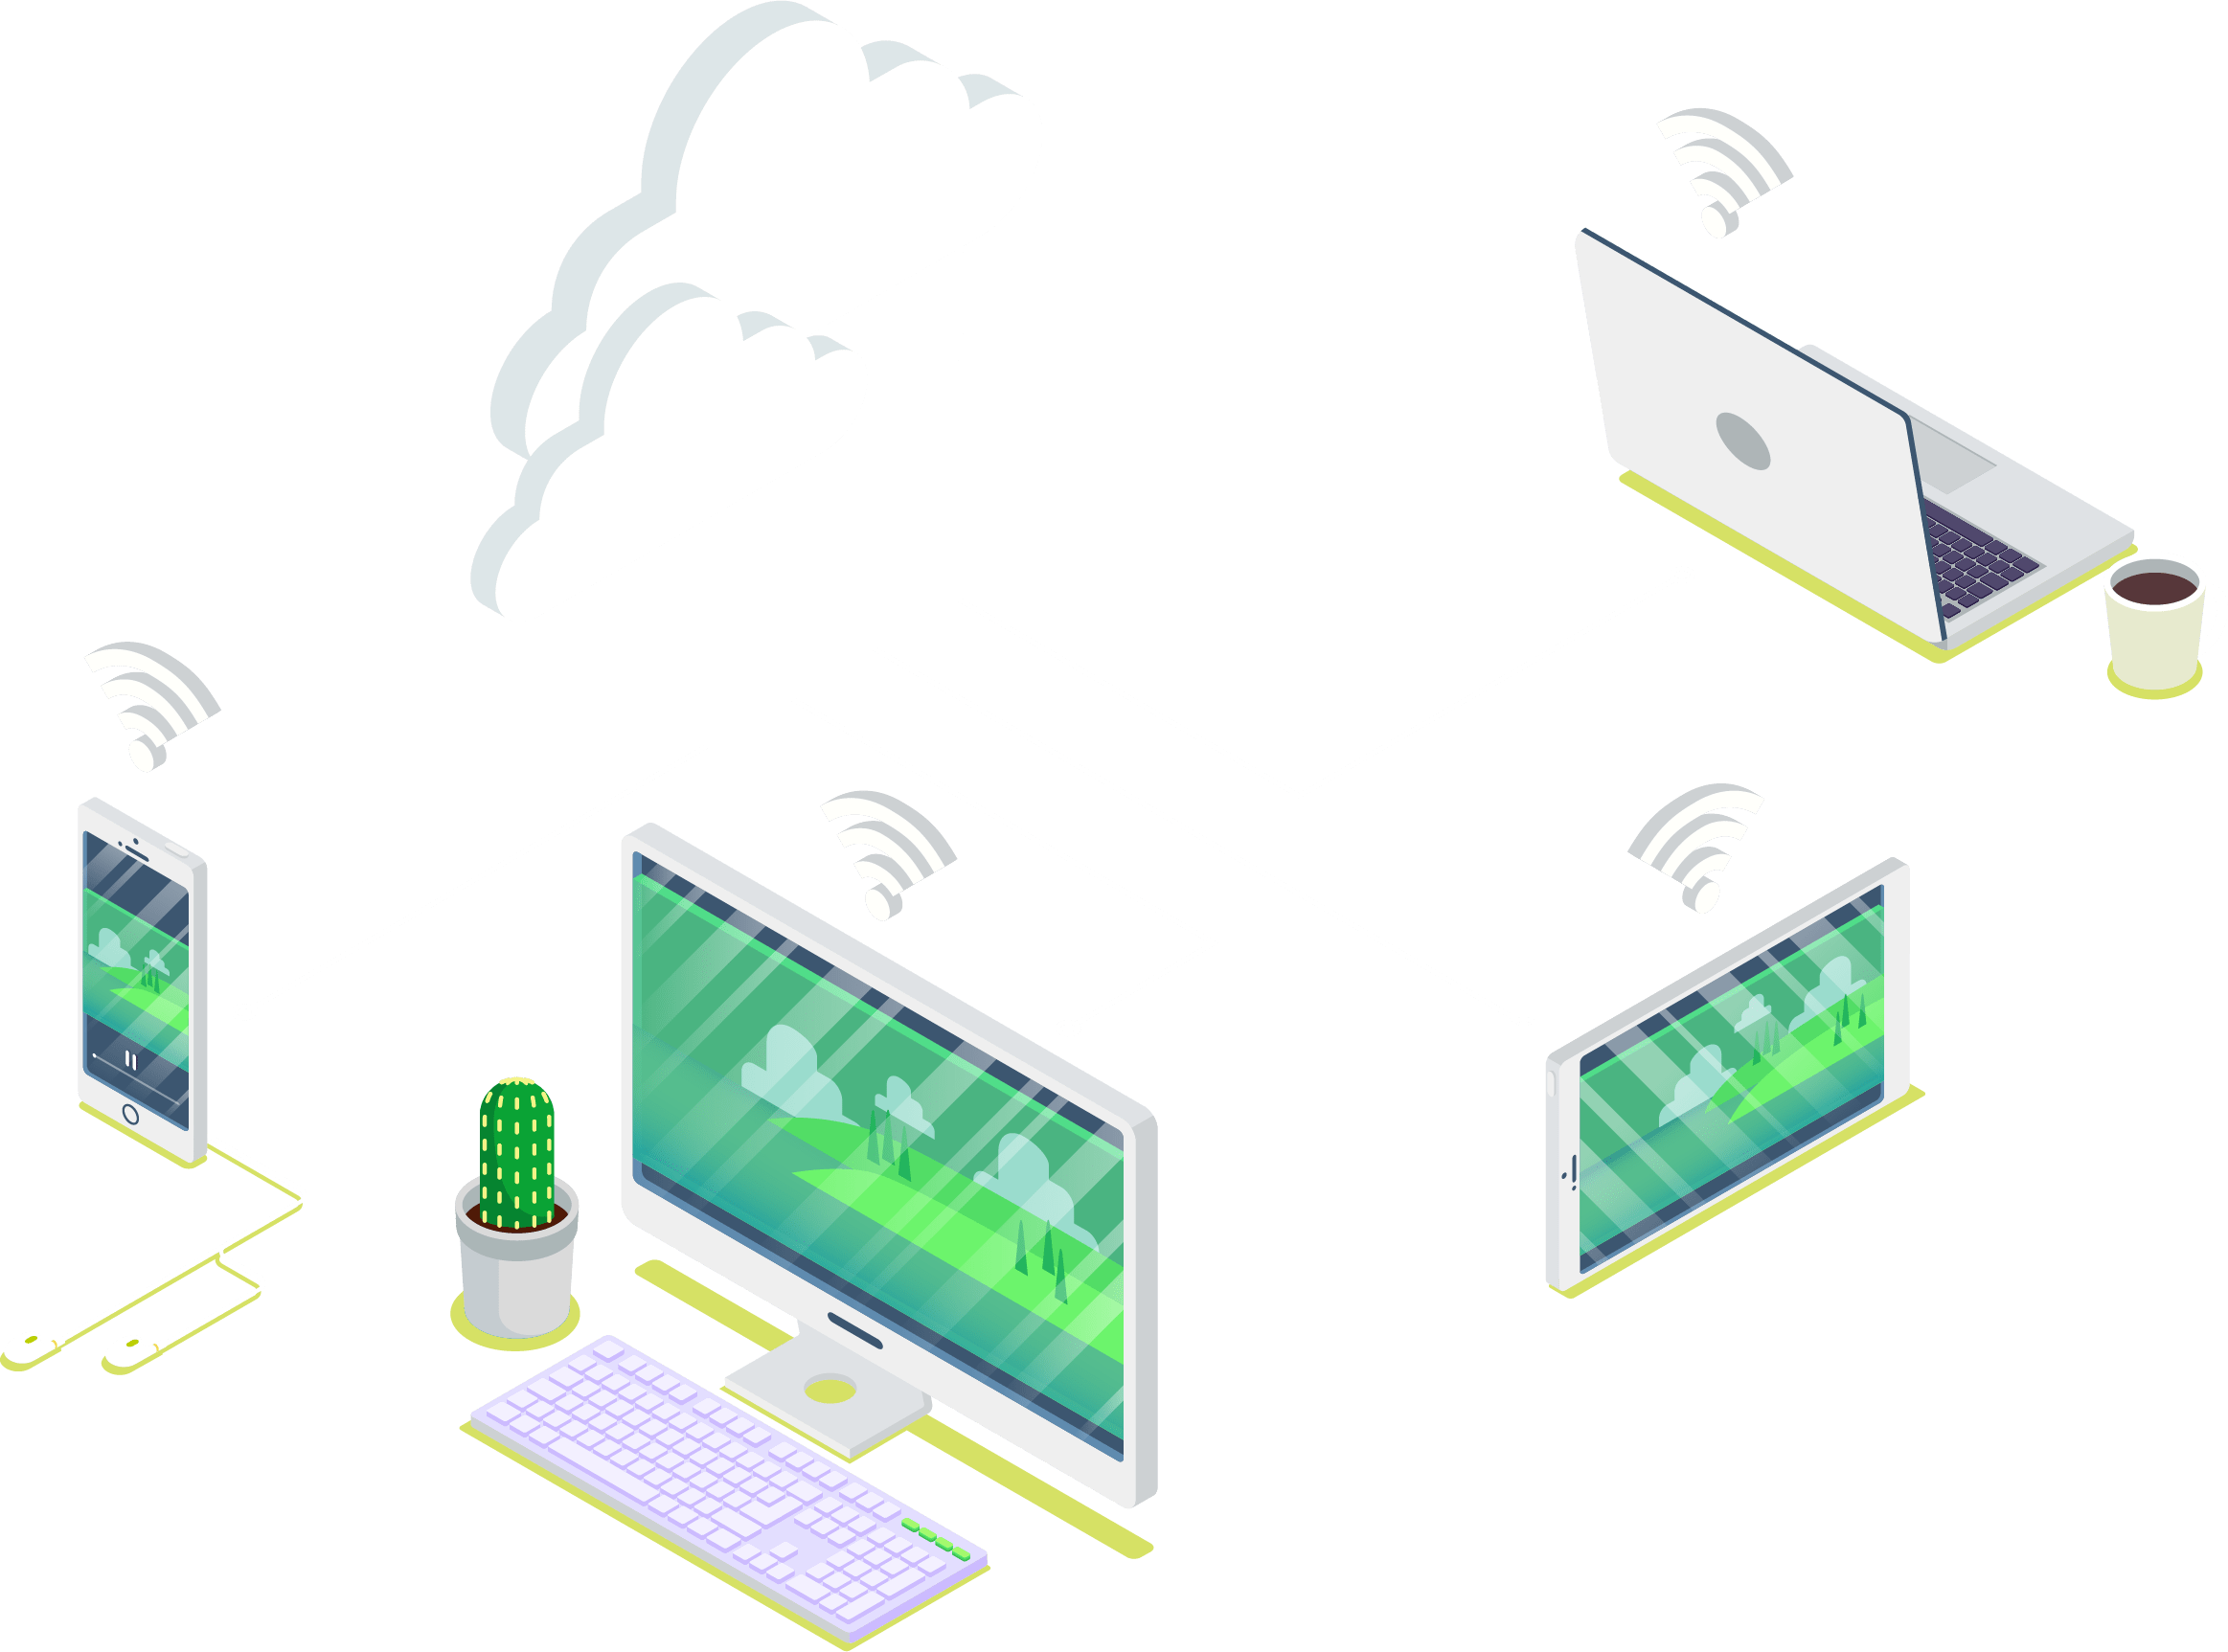 MetaWiFi ontwerpt Wi-Fi netwerken voor bedrijven en overheden